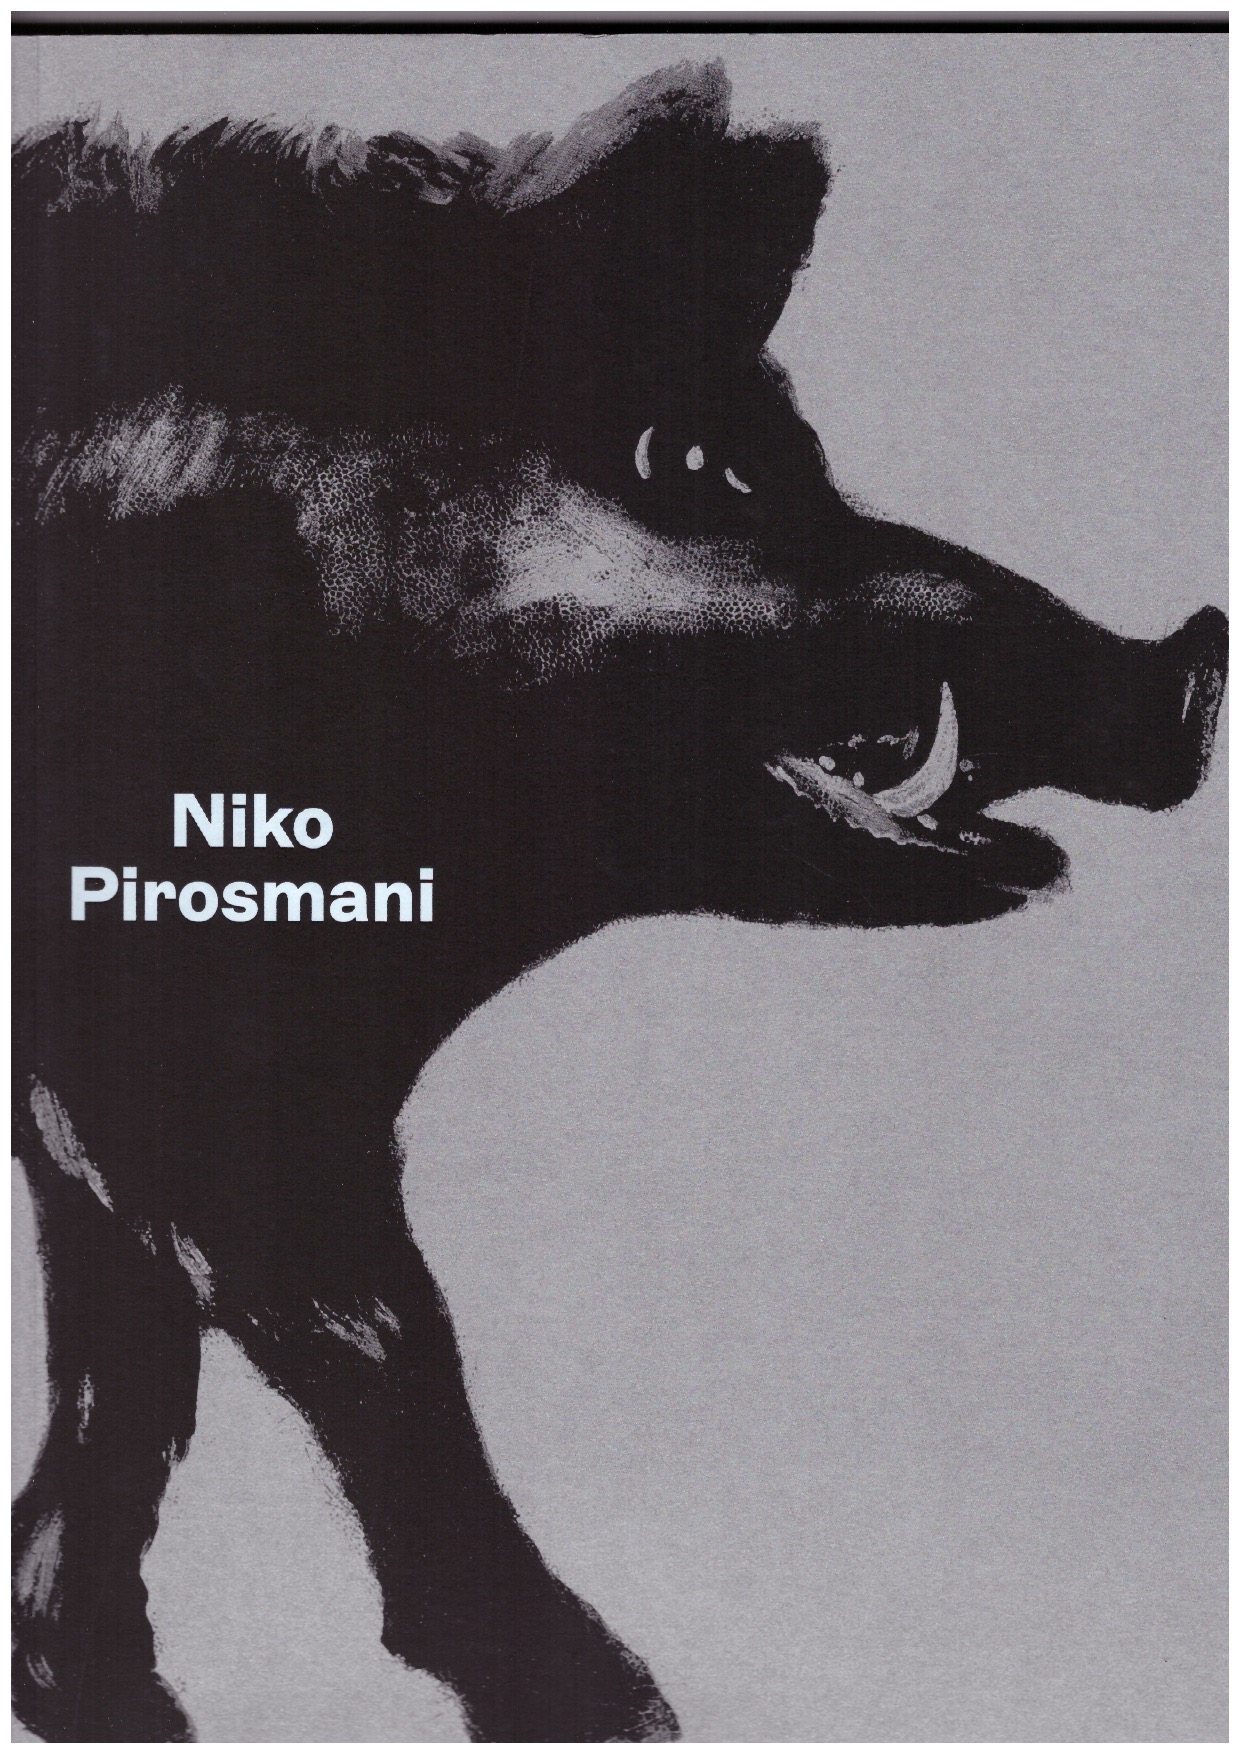 PIROSMANI, Niko; KELLER, Sam (ed.); BAUMANN, Daniel (ed.) - Niko Pirosmani